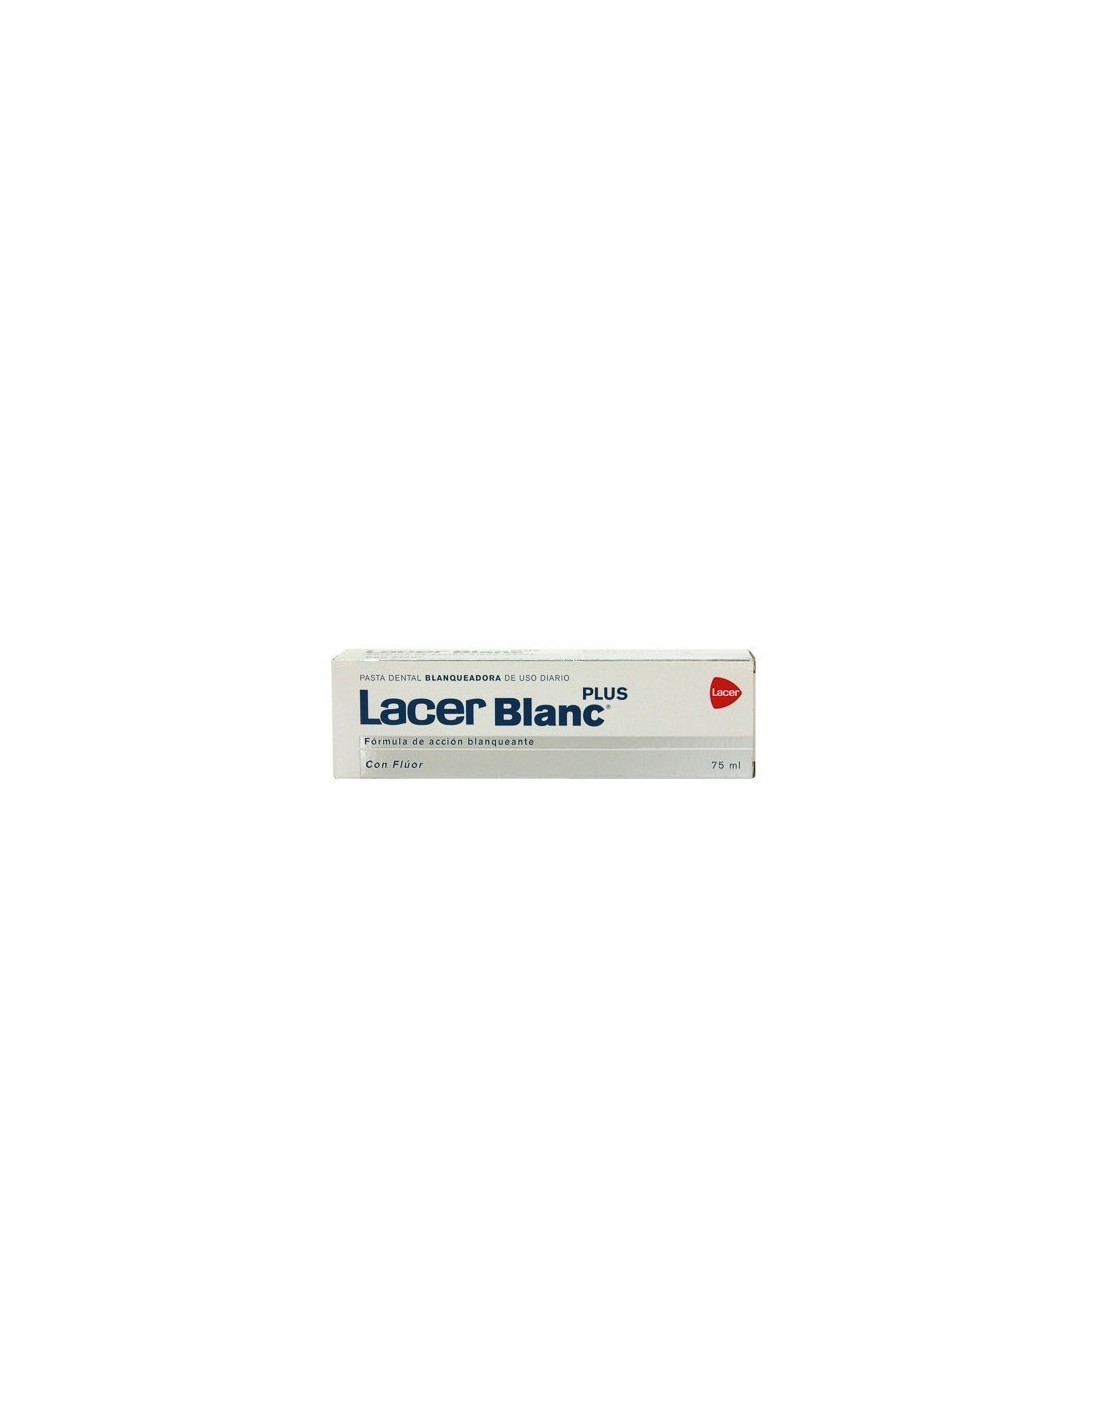 Opiniones de Lacer Blanc - Lacer Blanc Plus Citrus